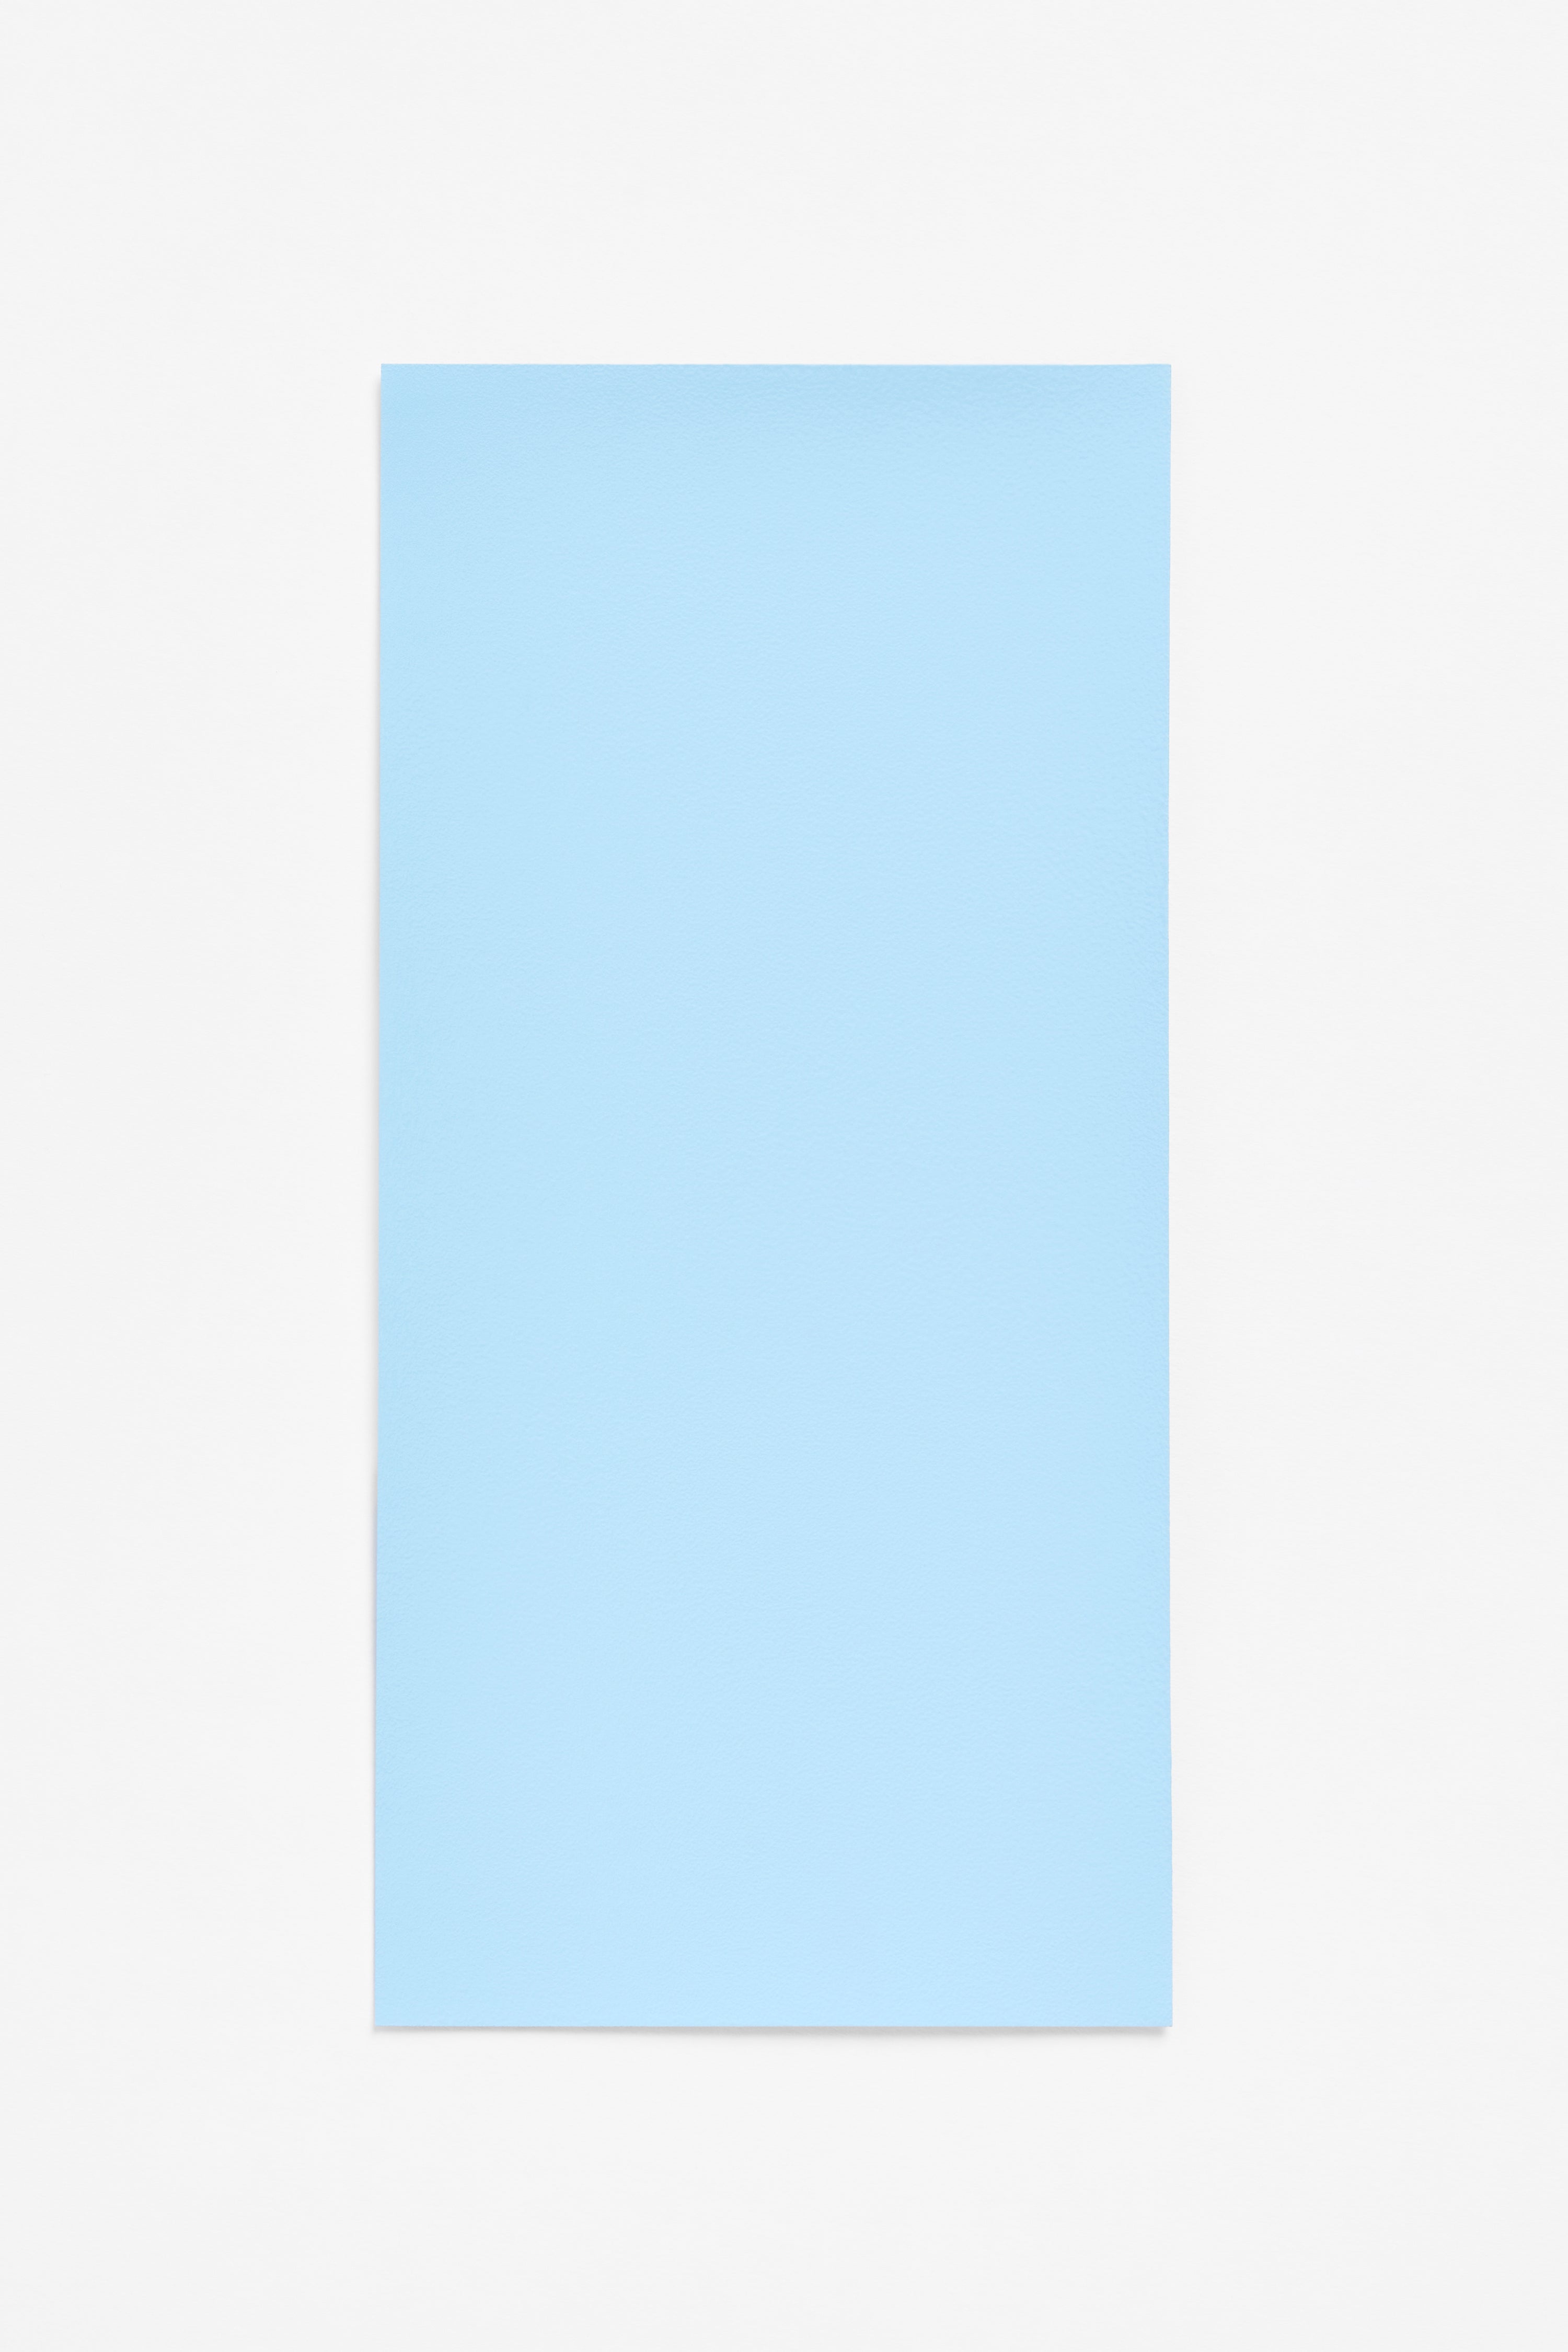 Helen Blue — a paint colour developed by Cecilie Bahnsen for Blēo